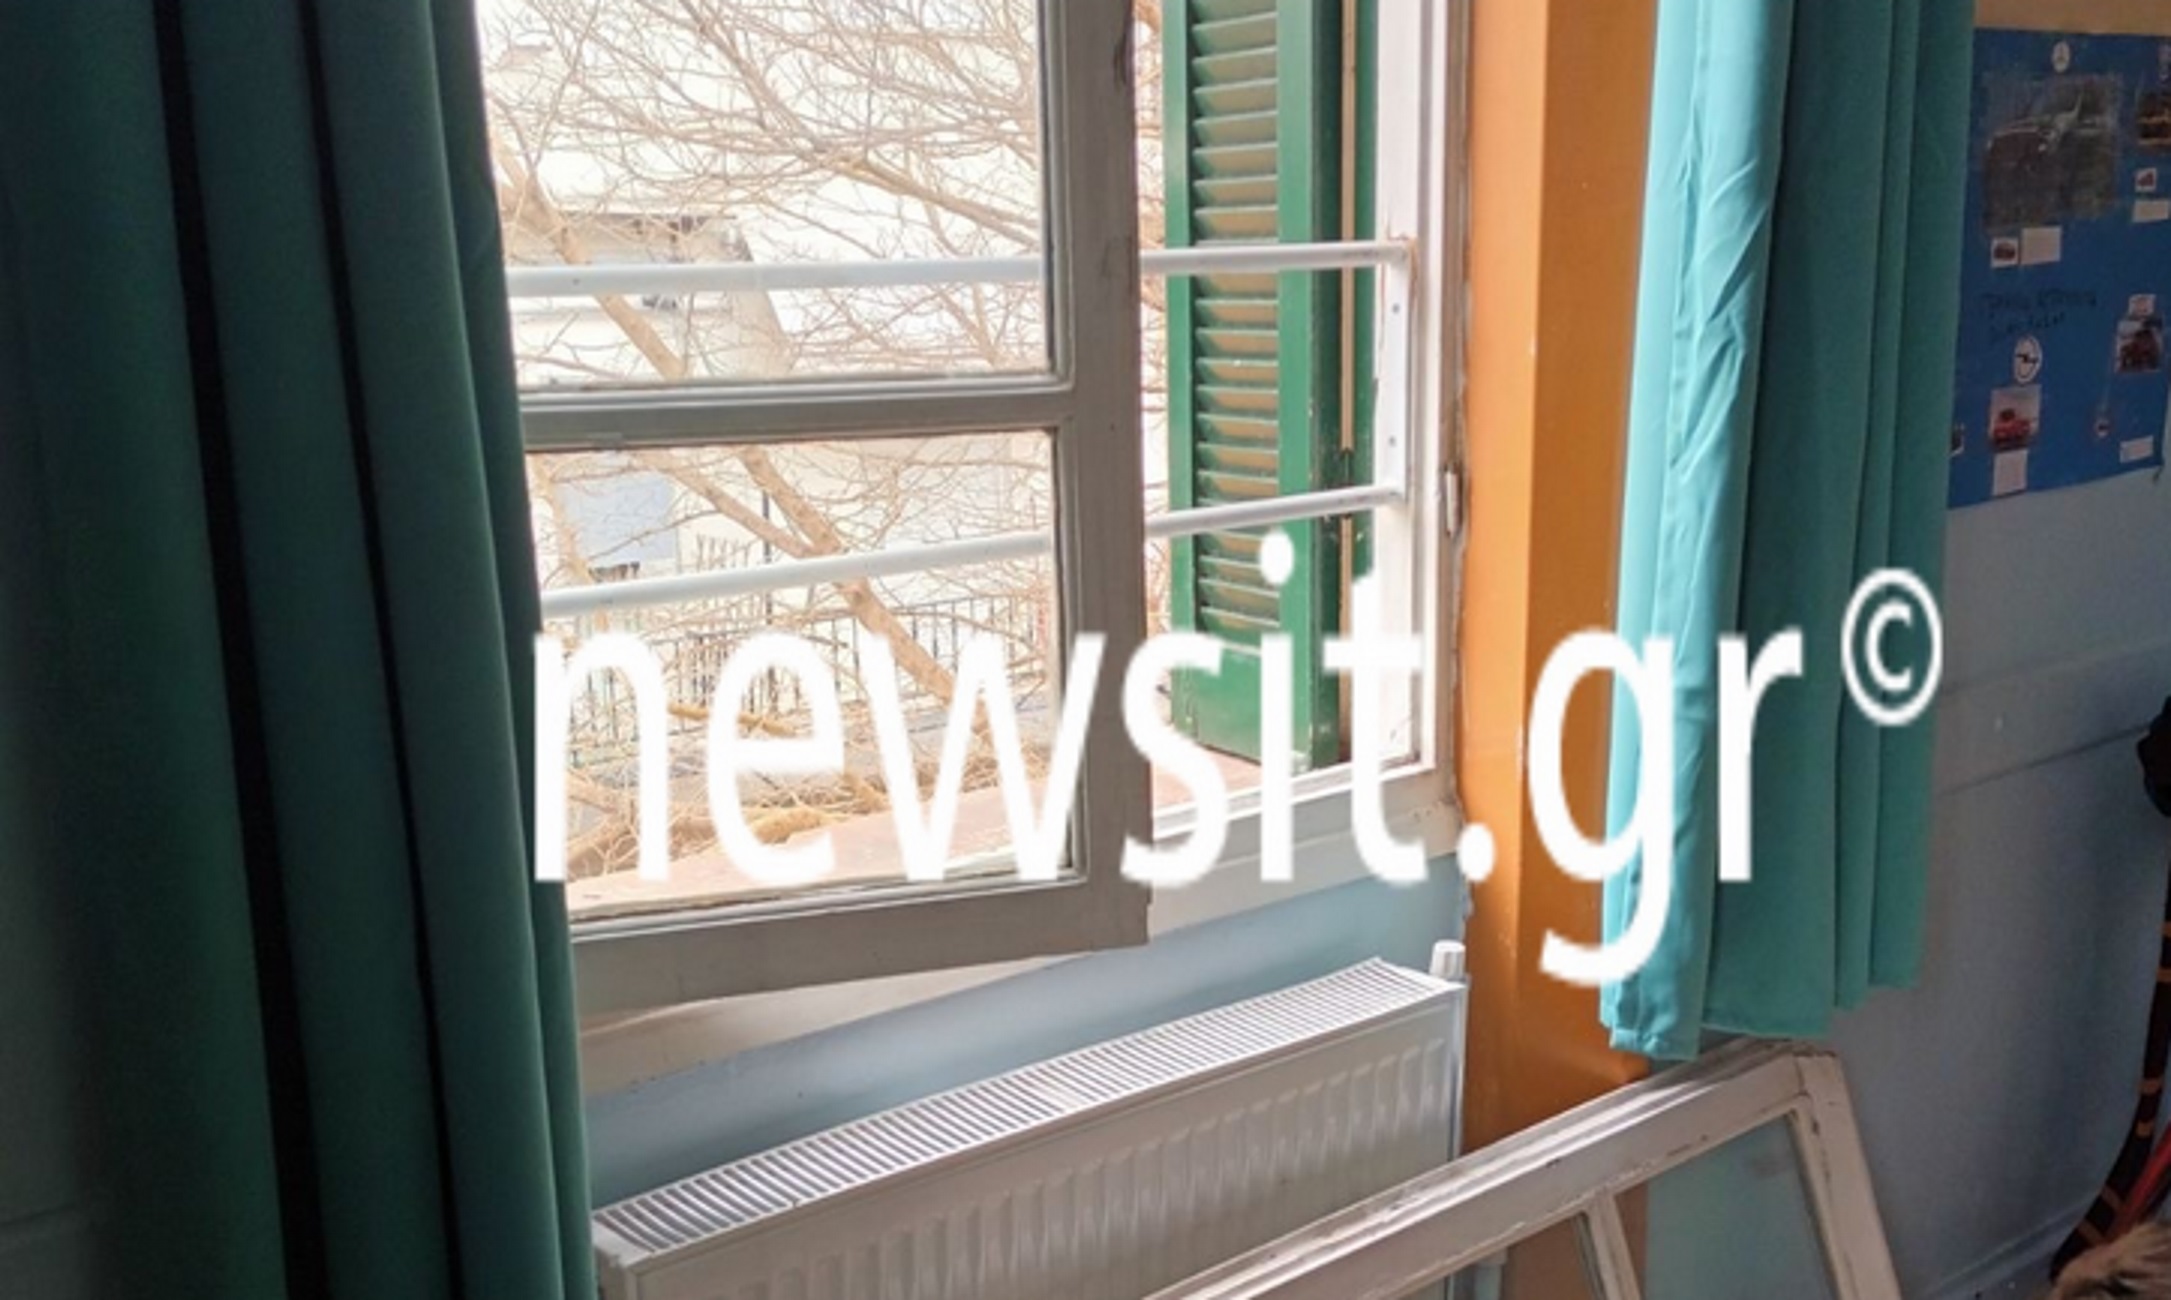 Θεσσαλονίκη: Το παράθυρο στο σχολείο διαλύθηκε μόλις το άνοιξε μαθητής – Αυτοψία μέσα στην τάξη